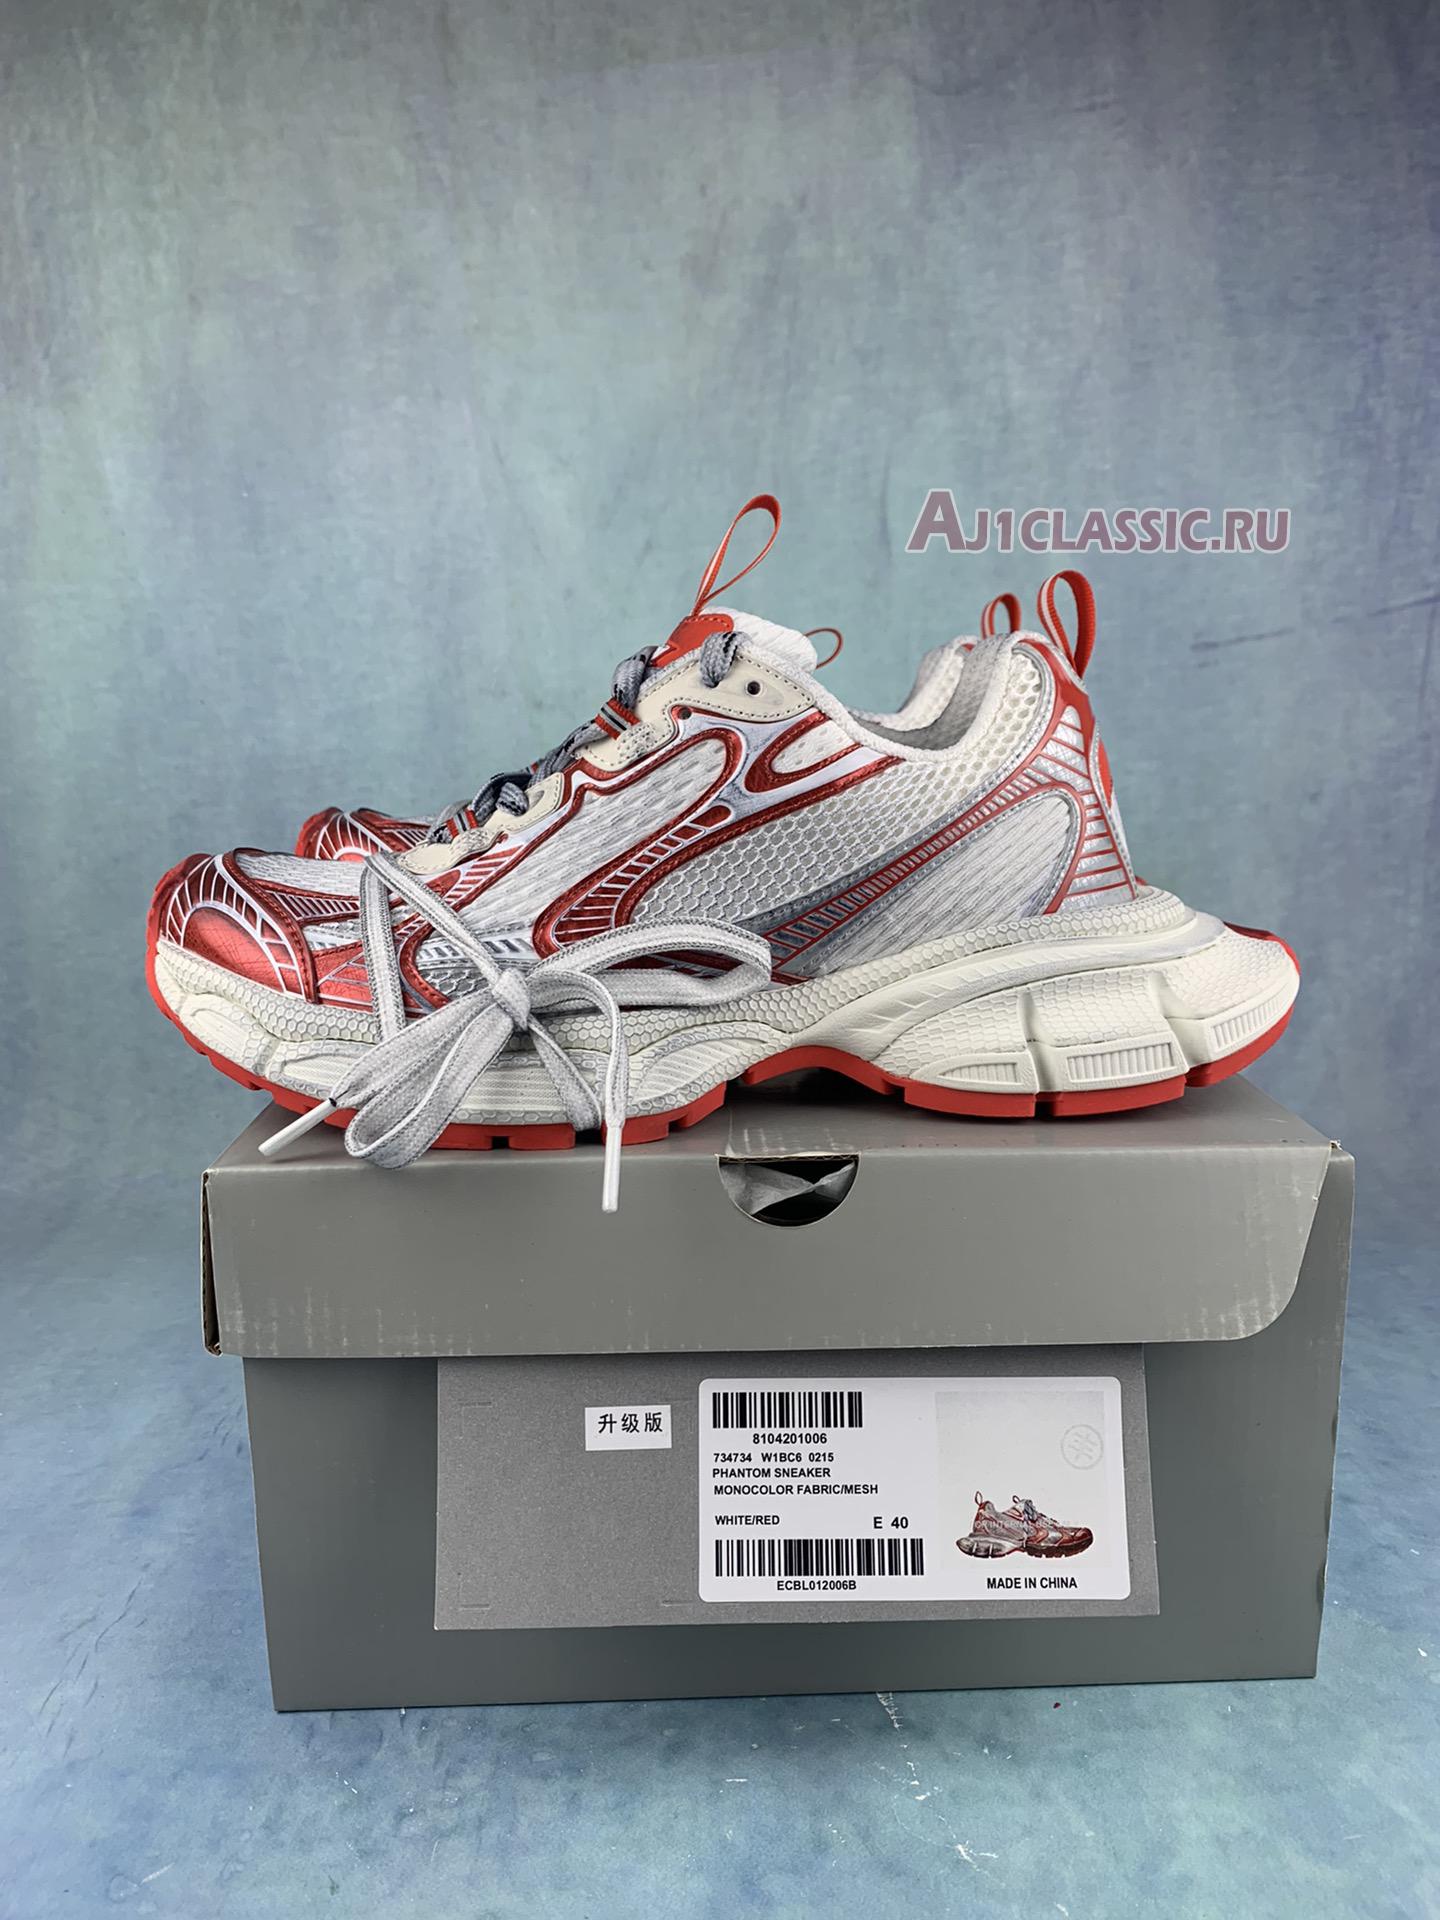 Balenciaga 3XL Sneaker "Worn-Out - White Red" 02 734734 W3XL2 9060-2